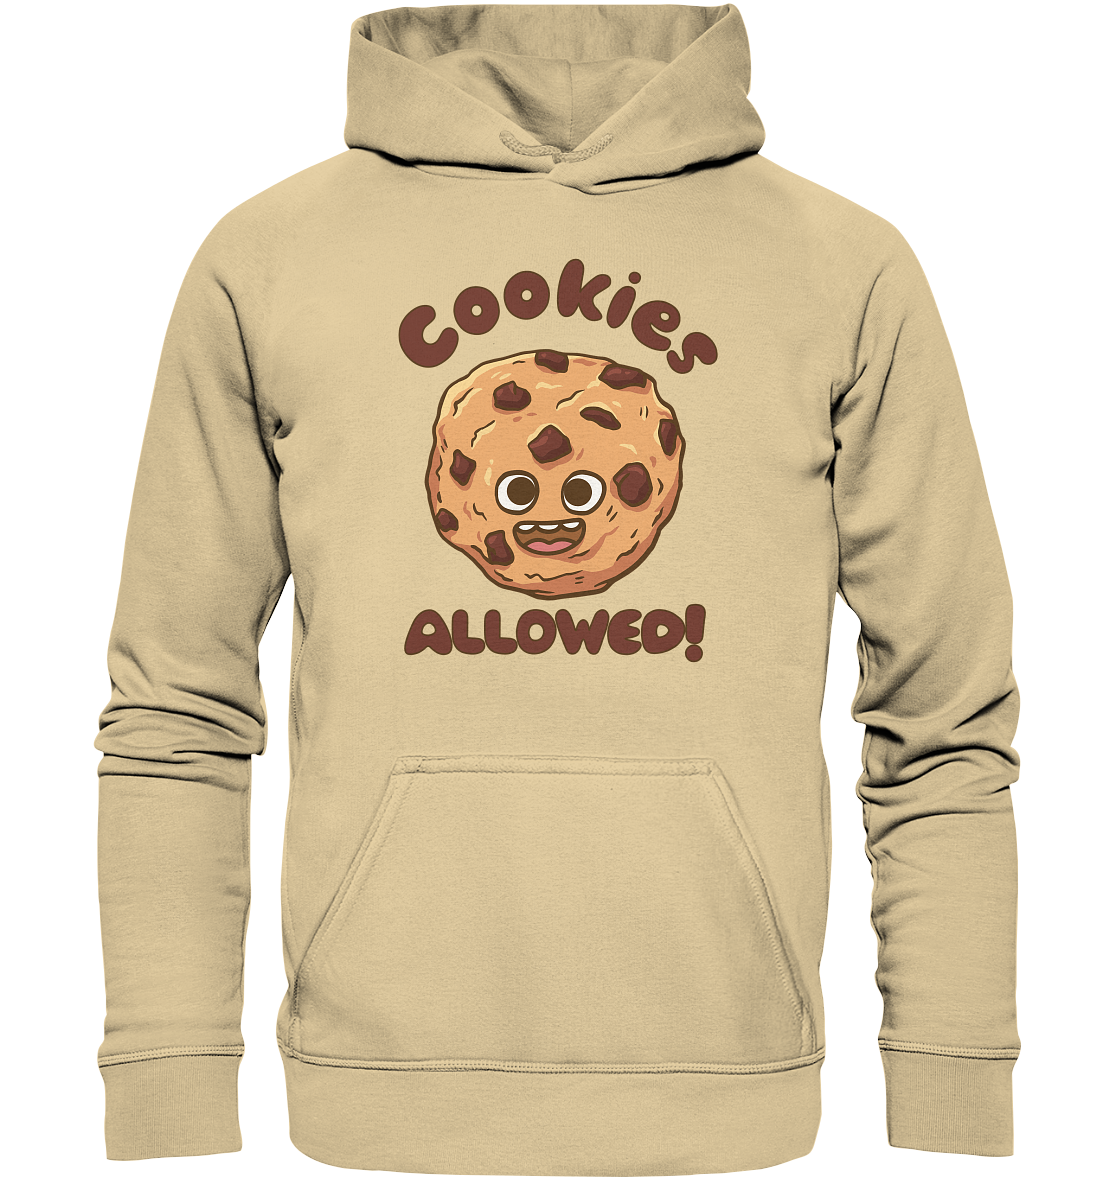 Cookies allowed! - Basic Unisex Hoodie